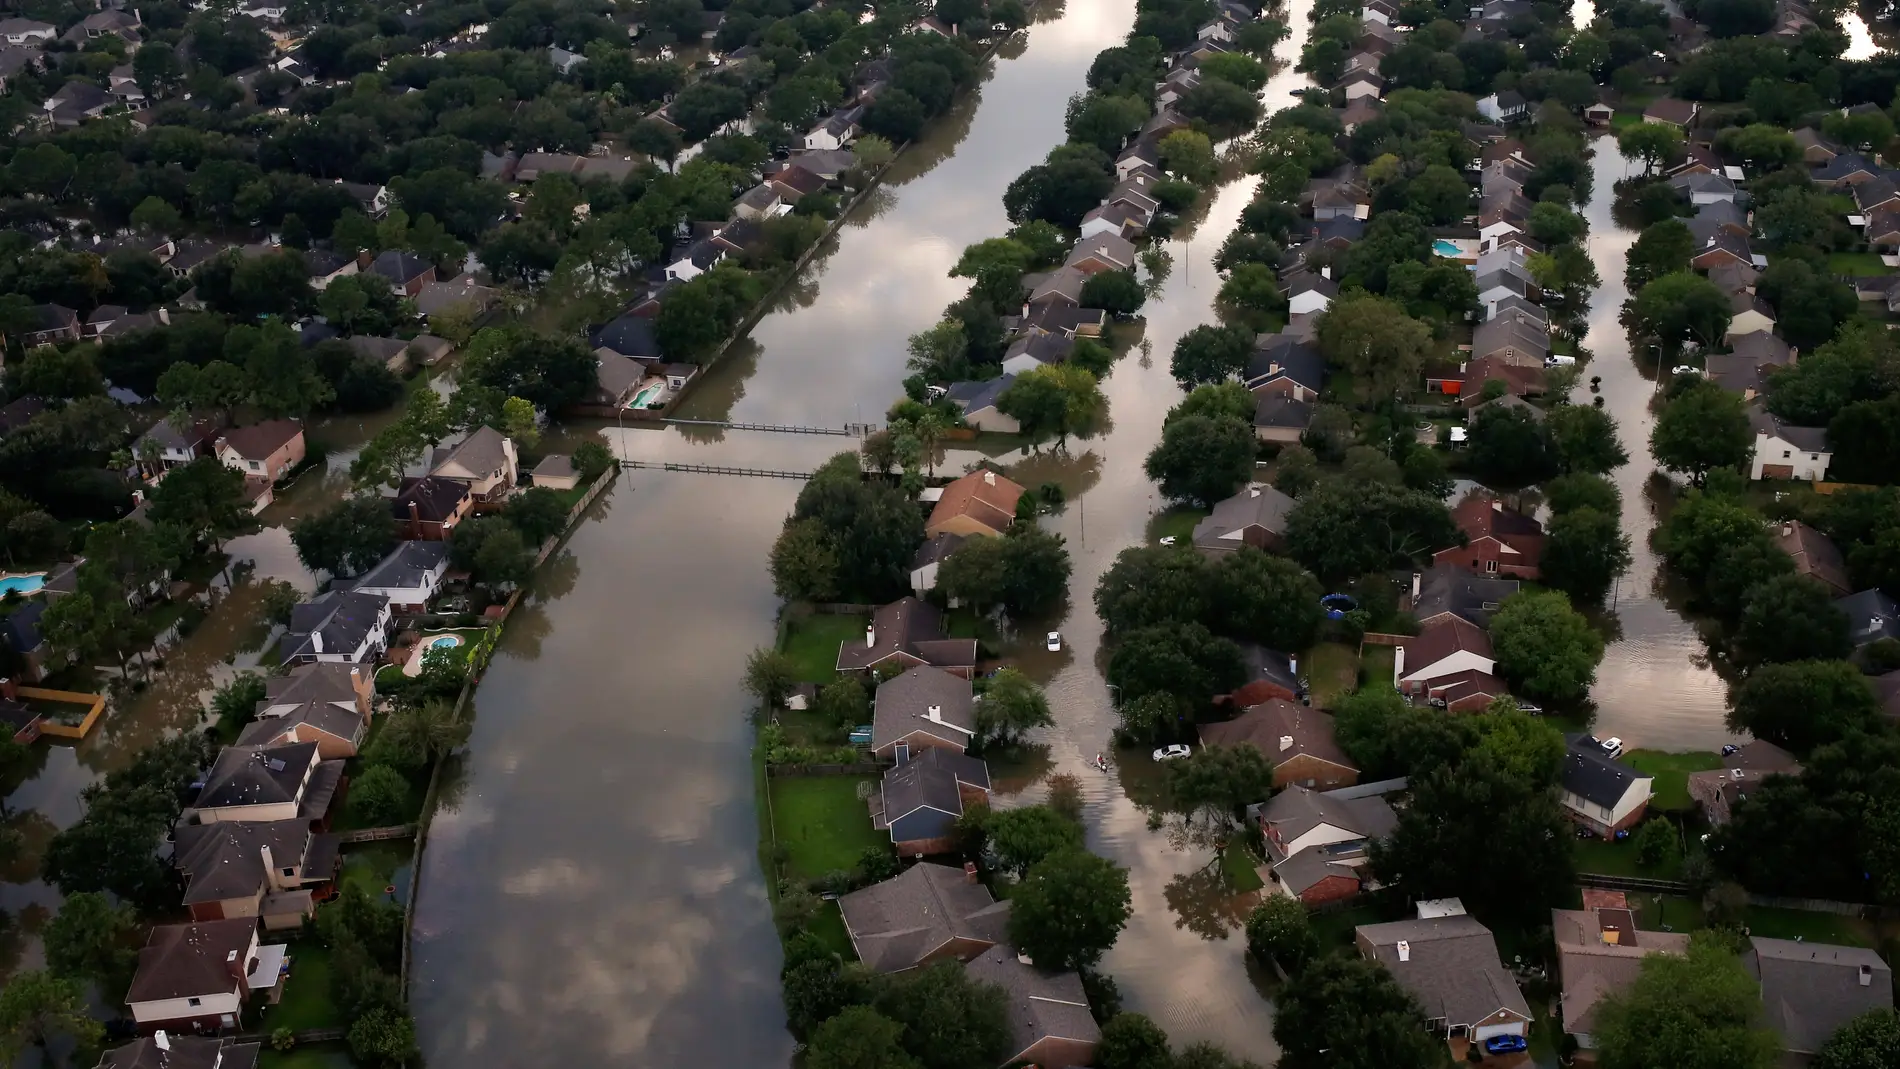 Casas parcialmente sumergidas en las aguas por las inundaciones causadas por la tormenta tropical Harvey en el noroeste de Houston, Texas